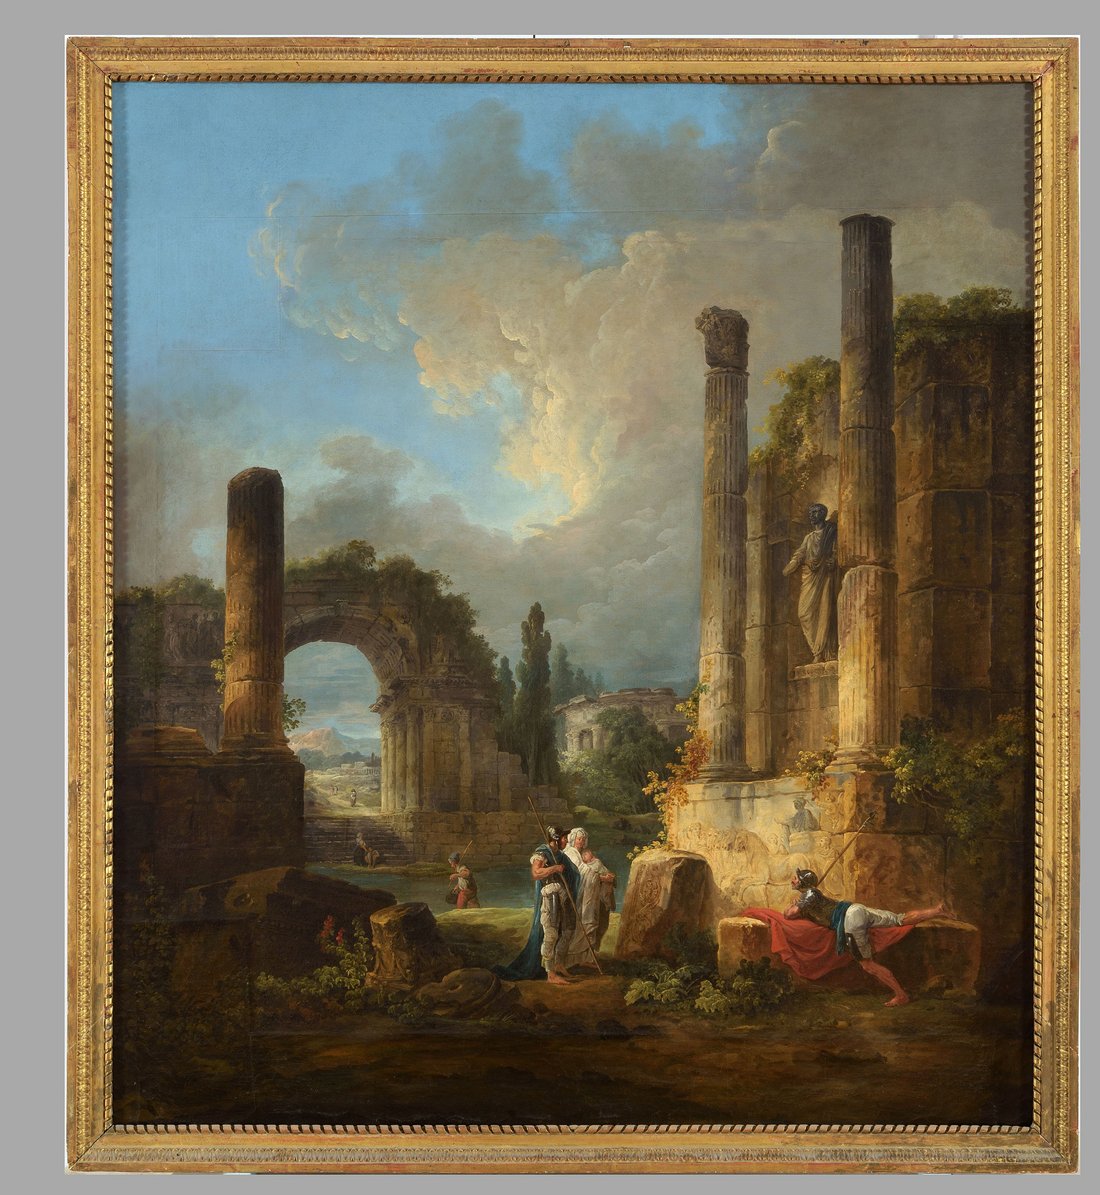 Hubert Robert, Ruines d'un temple, huile sur toile, 1,54 x 1,38 m, MNR 112. Source : Base POP.